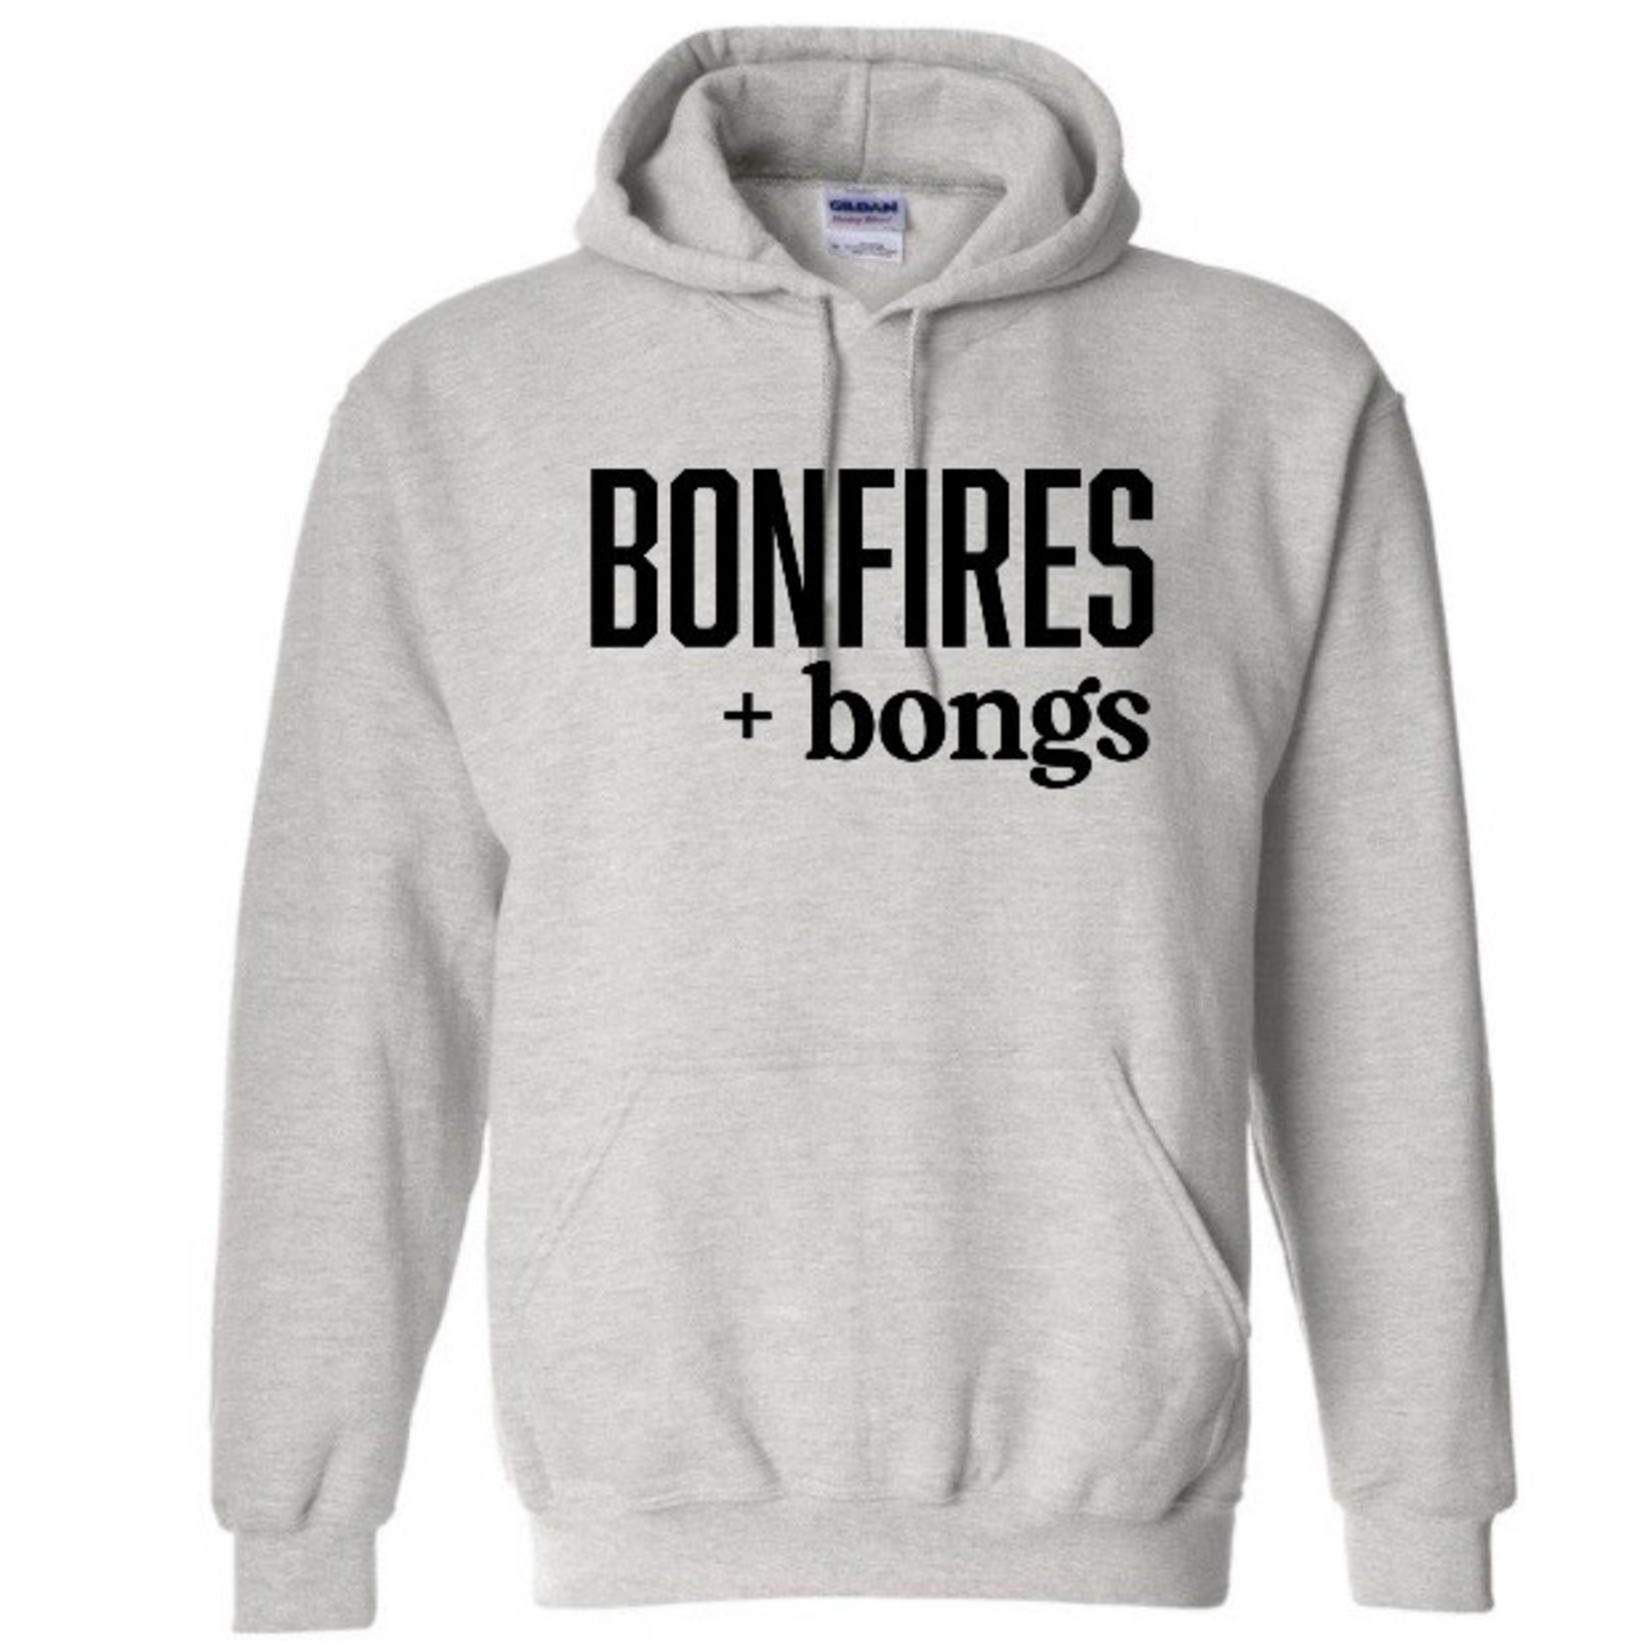 Bonfire and bongs